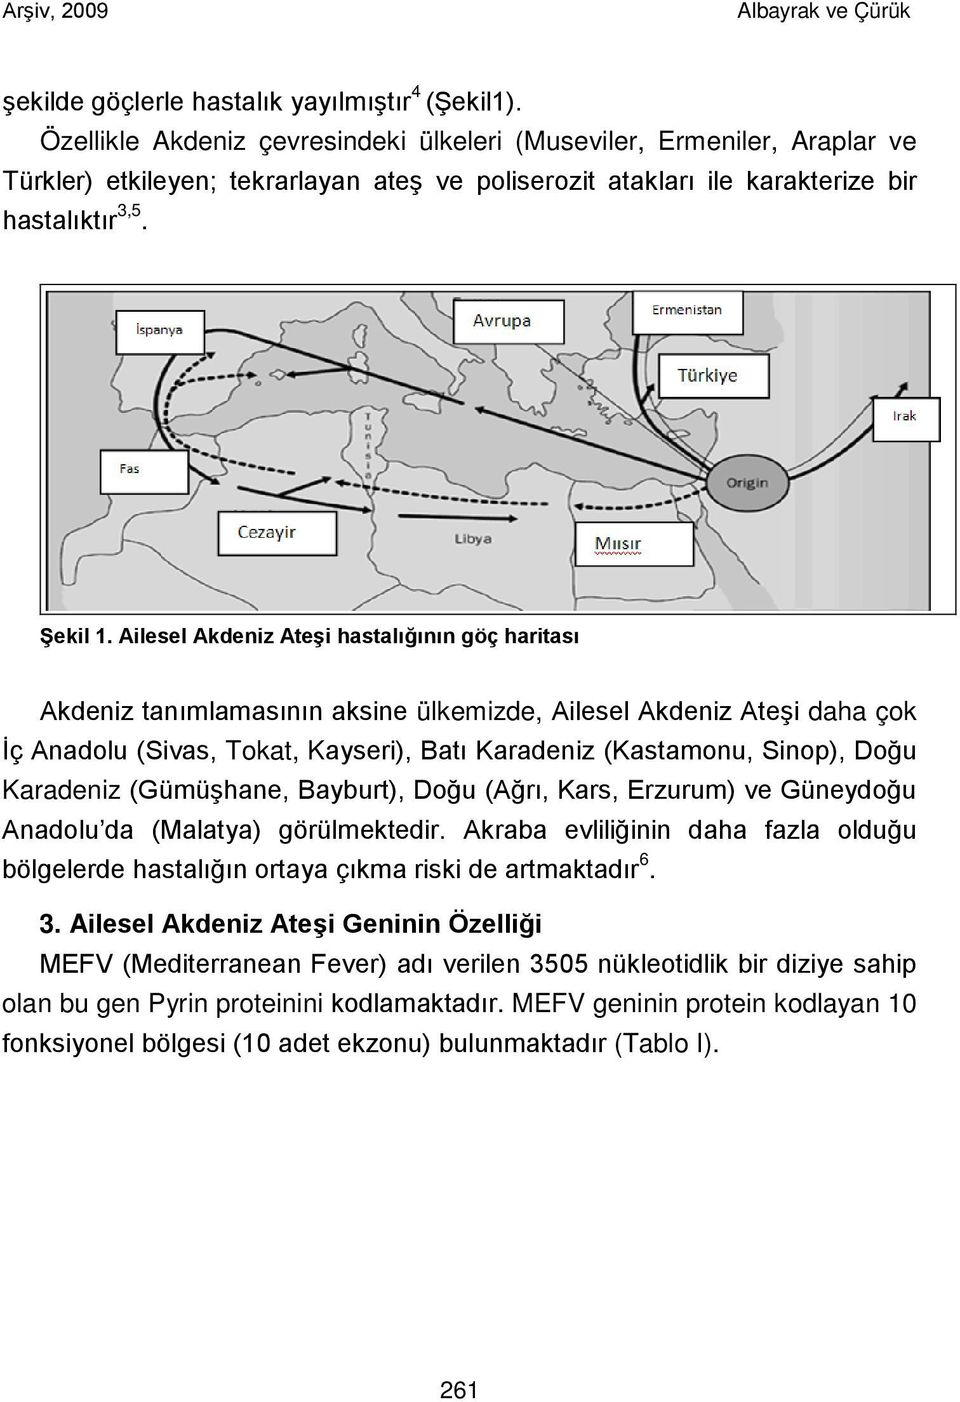 Ailesel Akdeniz Ateşi hastalığının göç haritası Akdeniz tanımlamasının aksine ülkemizde, Ailesel Akdeniz Ateşi daha çok İç Anadolu (Sivas, Tokat, Kayseri), Batı Karadeniz (Kastamonu, Sinop), Doğu